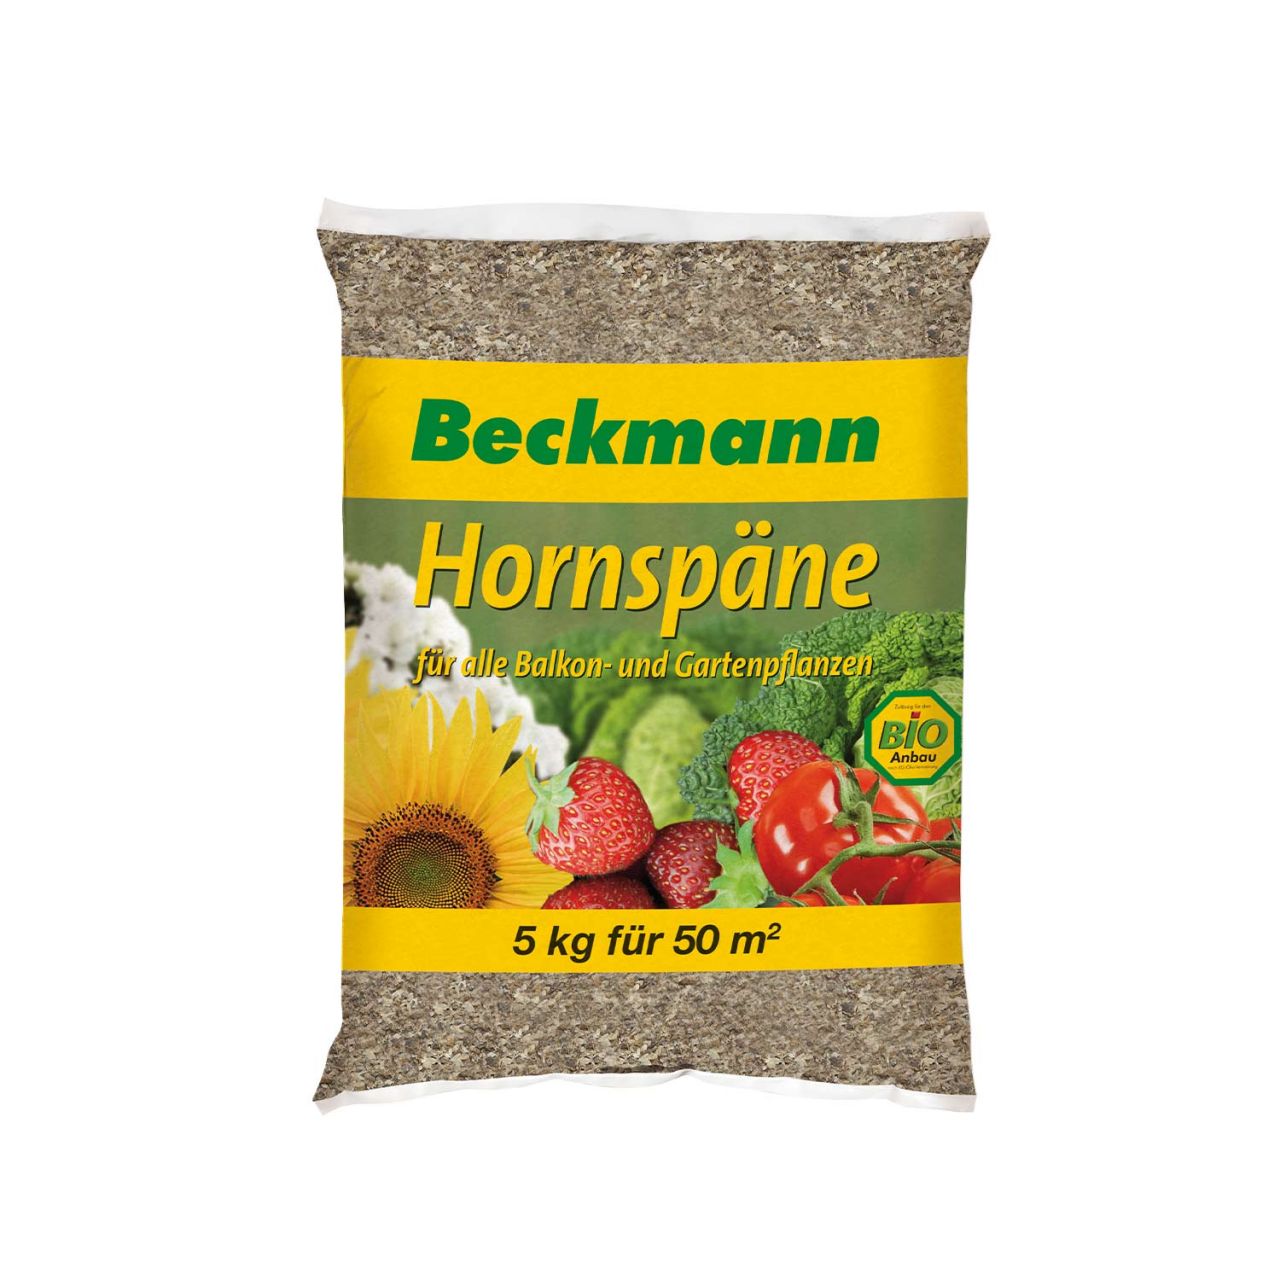 Beckmann – Hornspäne – 5 kg